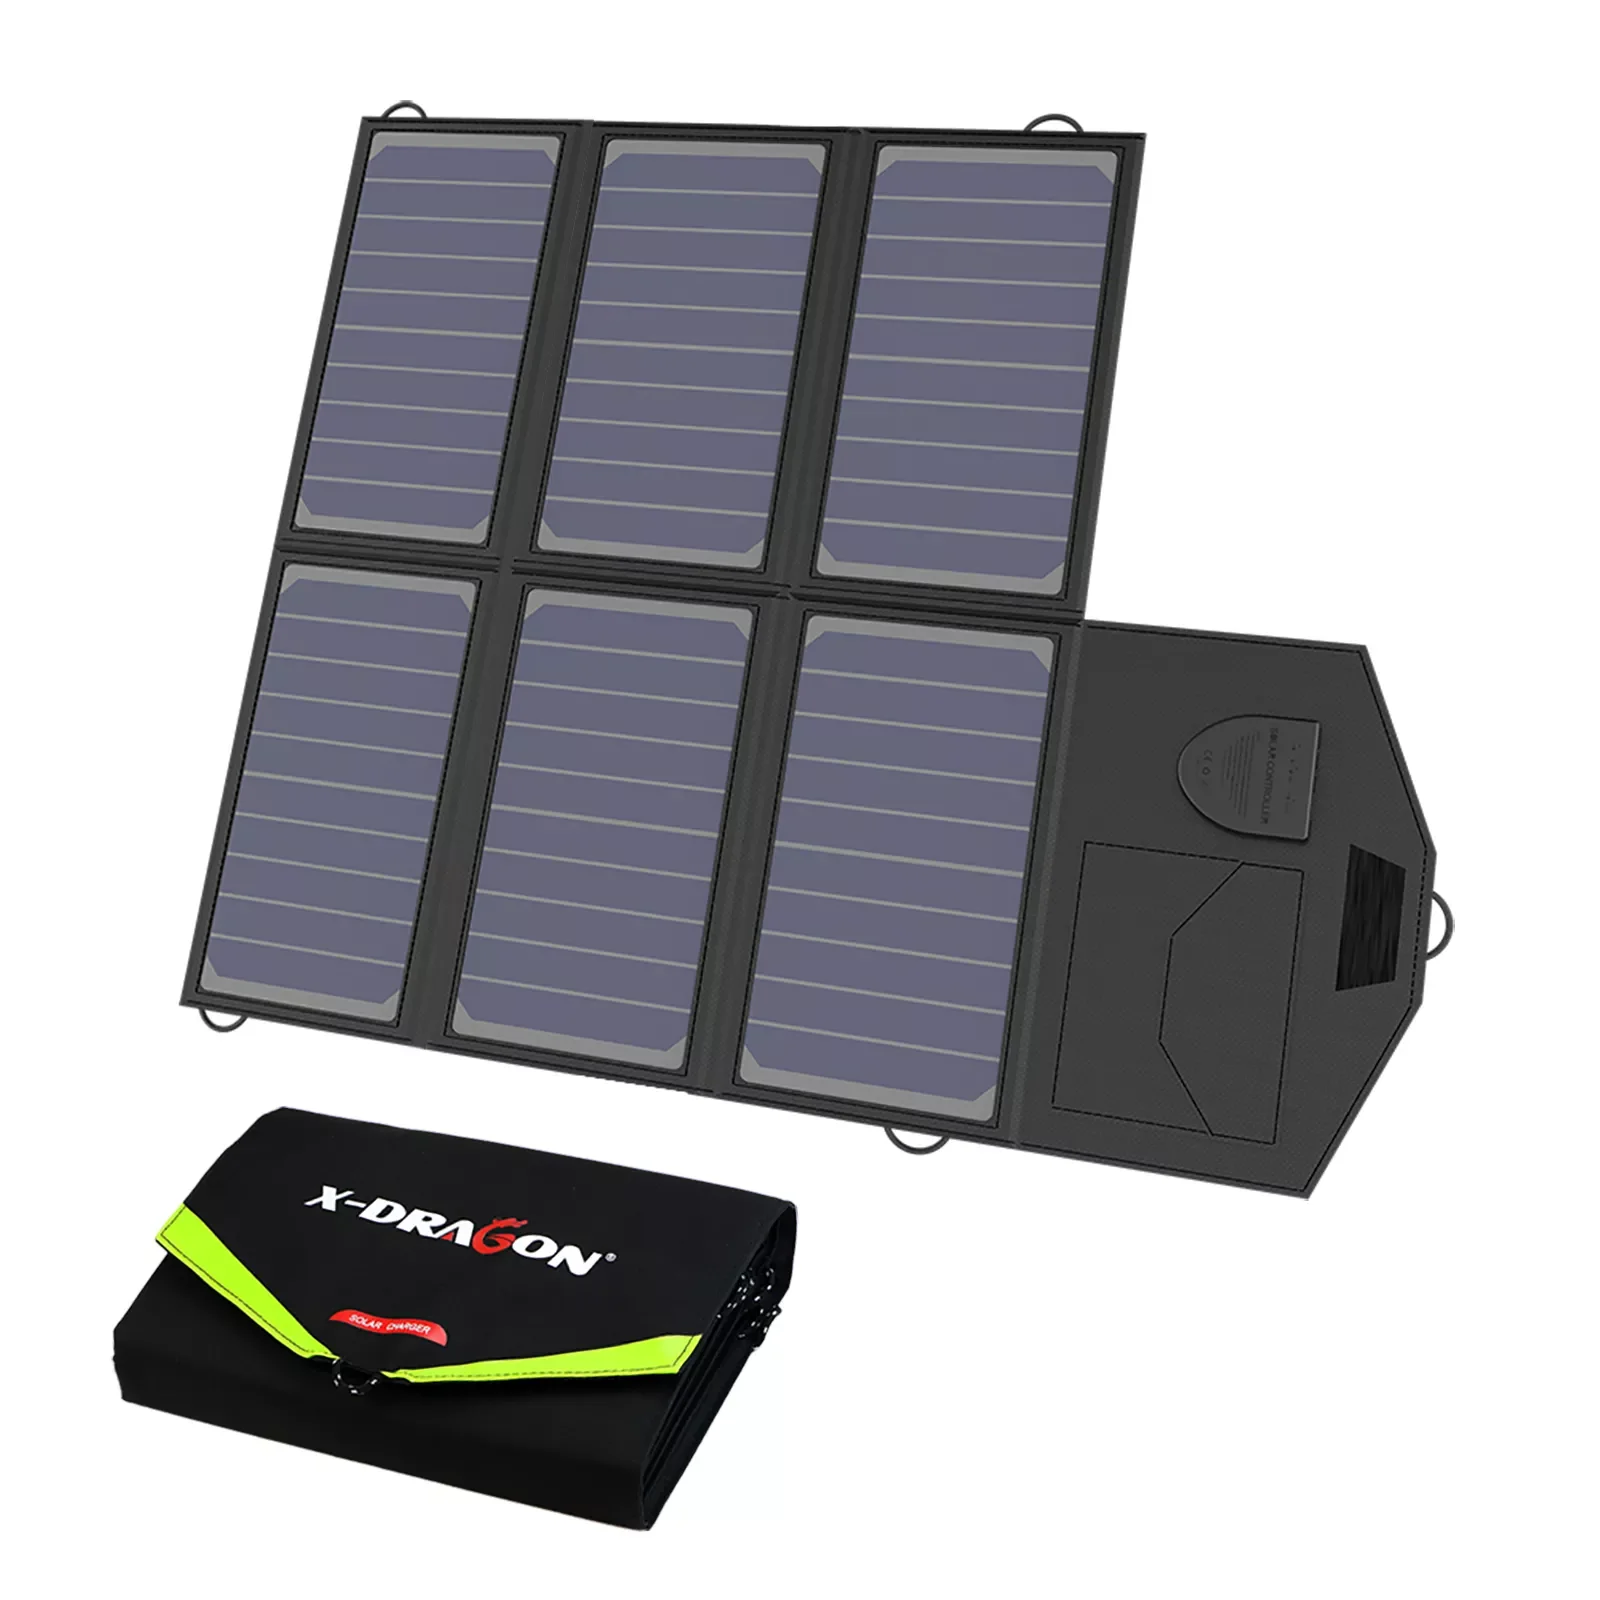 

Солнечная панель 40 Вт, 12 В, X-Dragon, с зарядным устройством для солнечной батареи, для зарядки телефонов iPhone, Sumsung, ноутбуков, 12 В, для использов...